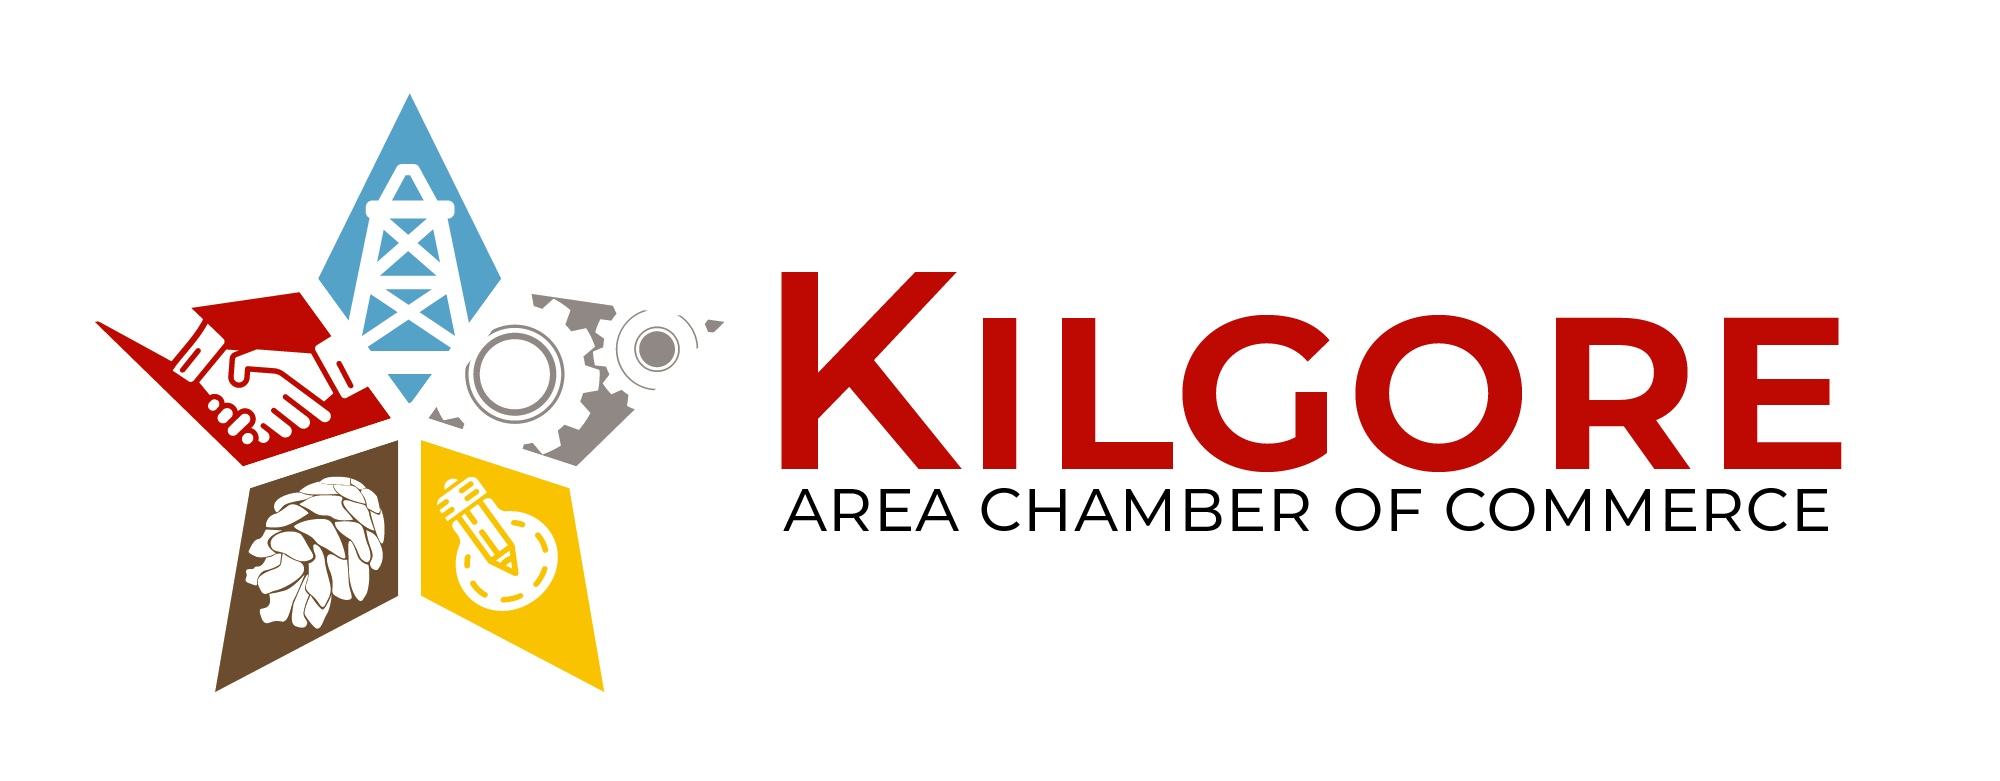 Kilgore Chamber of Commerce - Lennis Design, Longview TX Web Design